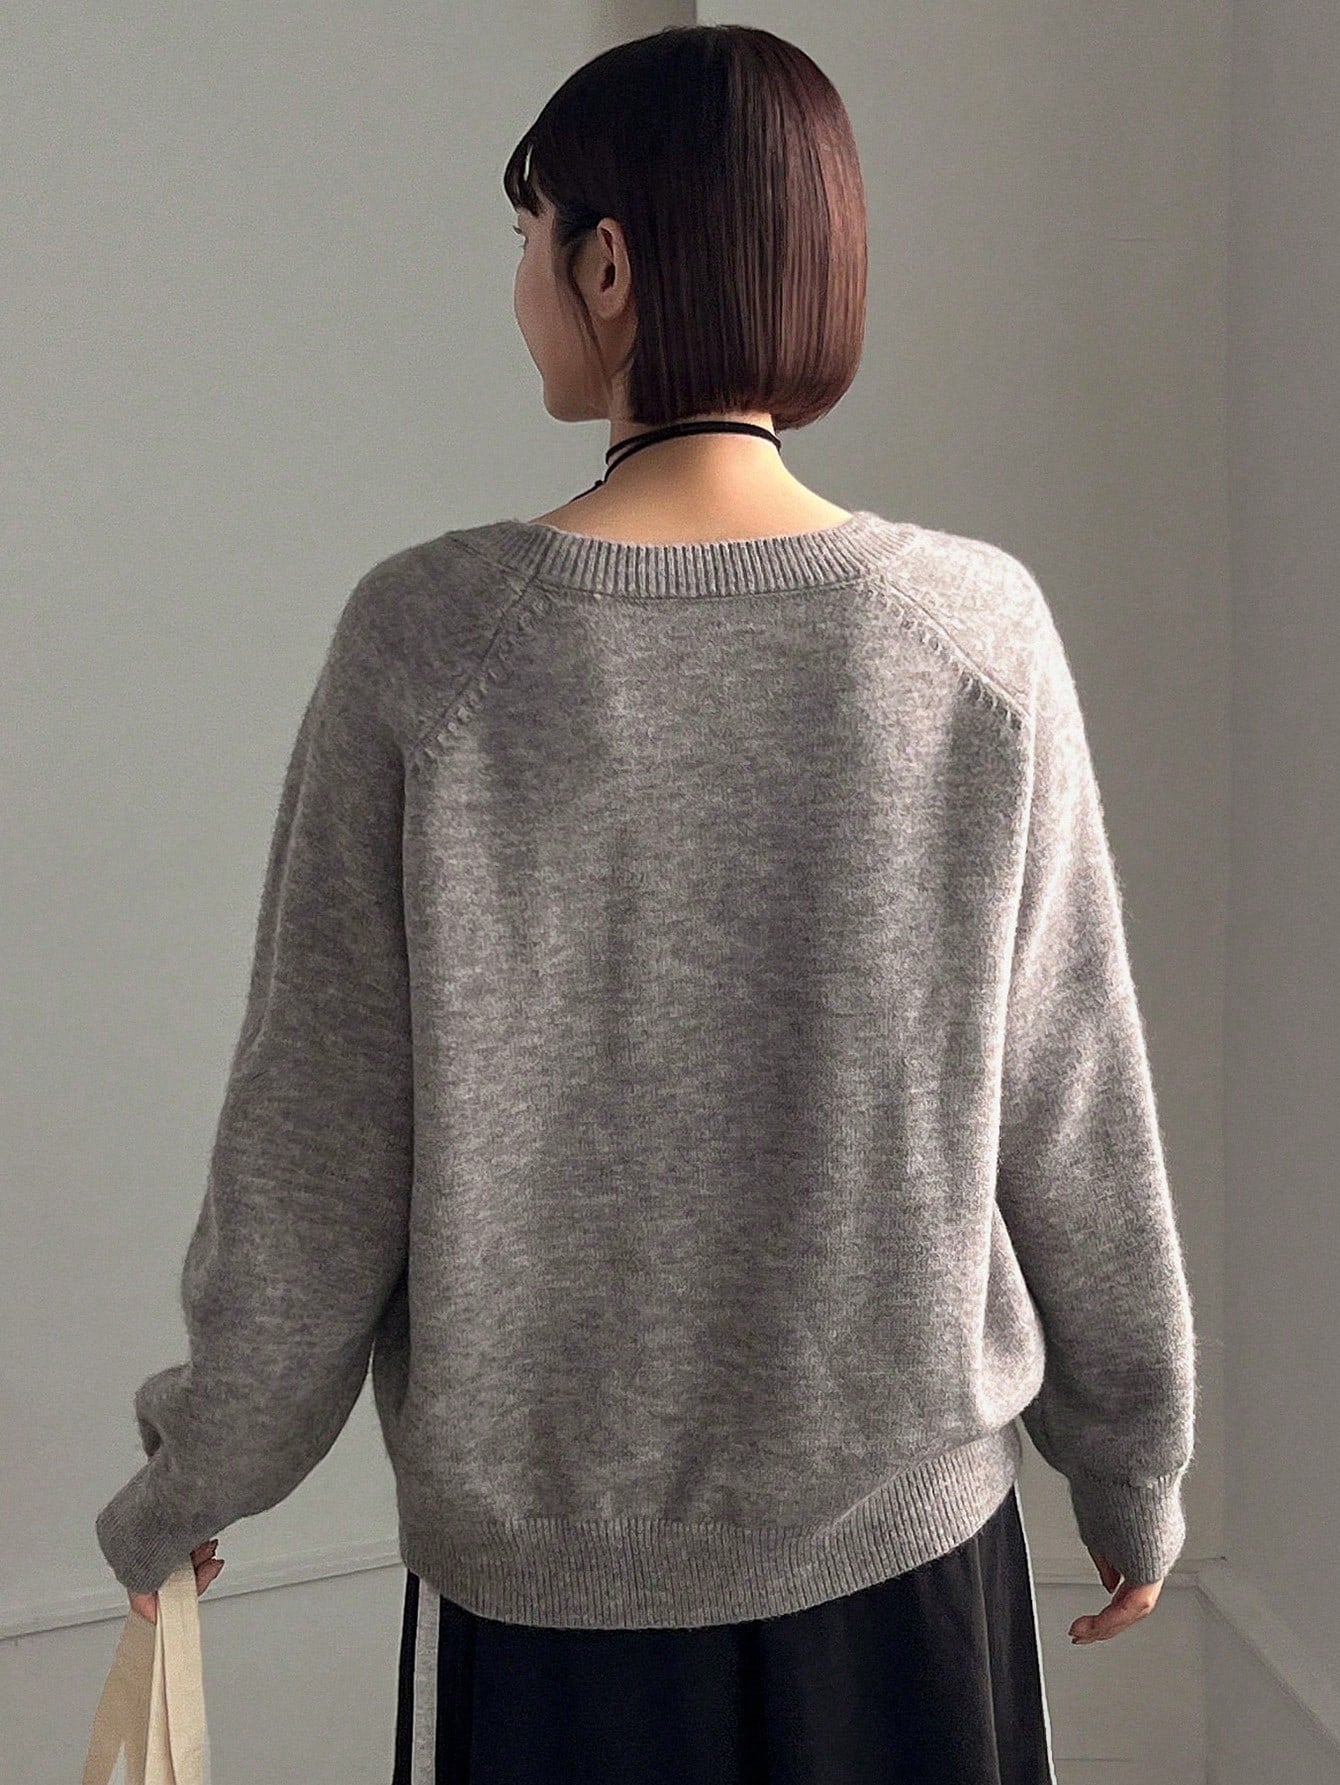 FRIFUL Women's Cartoon Pattern Raglan Long Sleeve Sweater